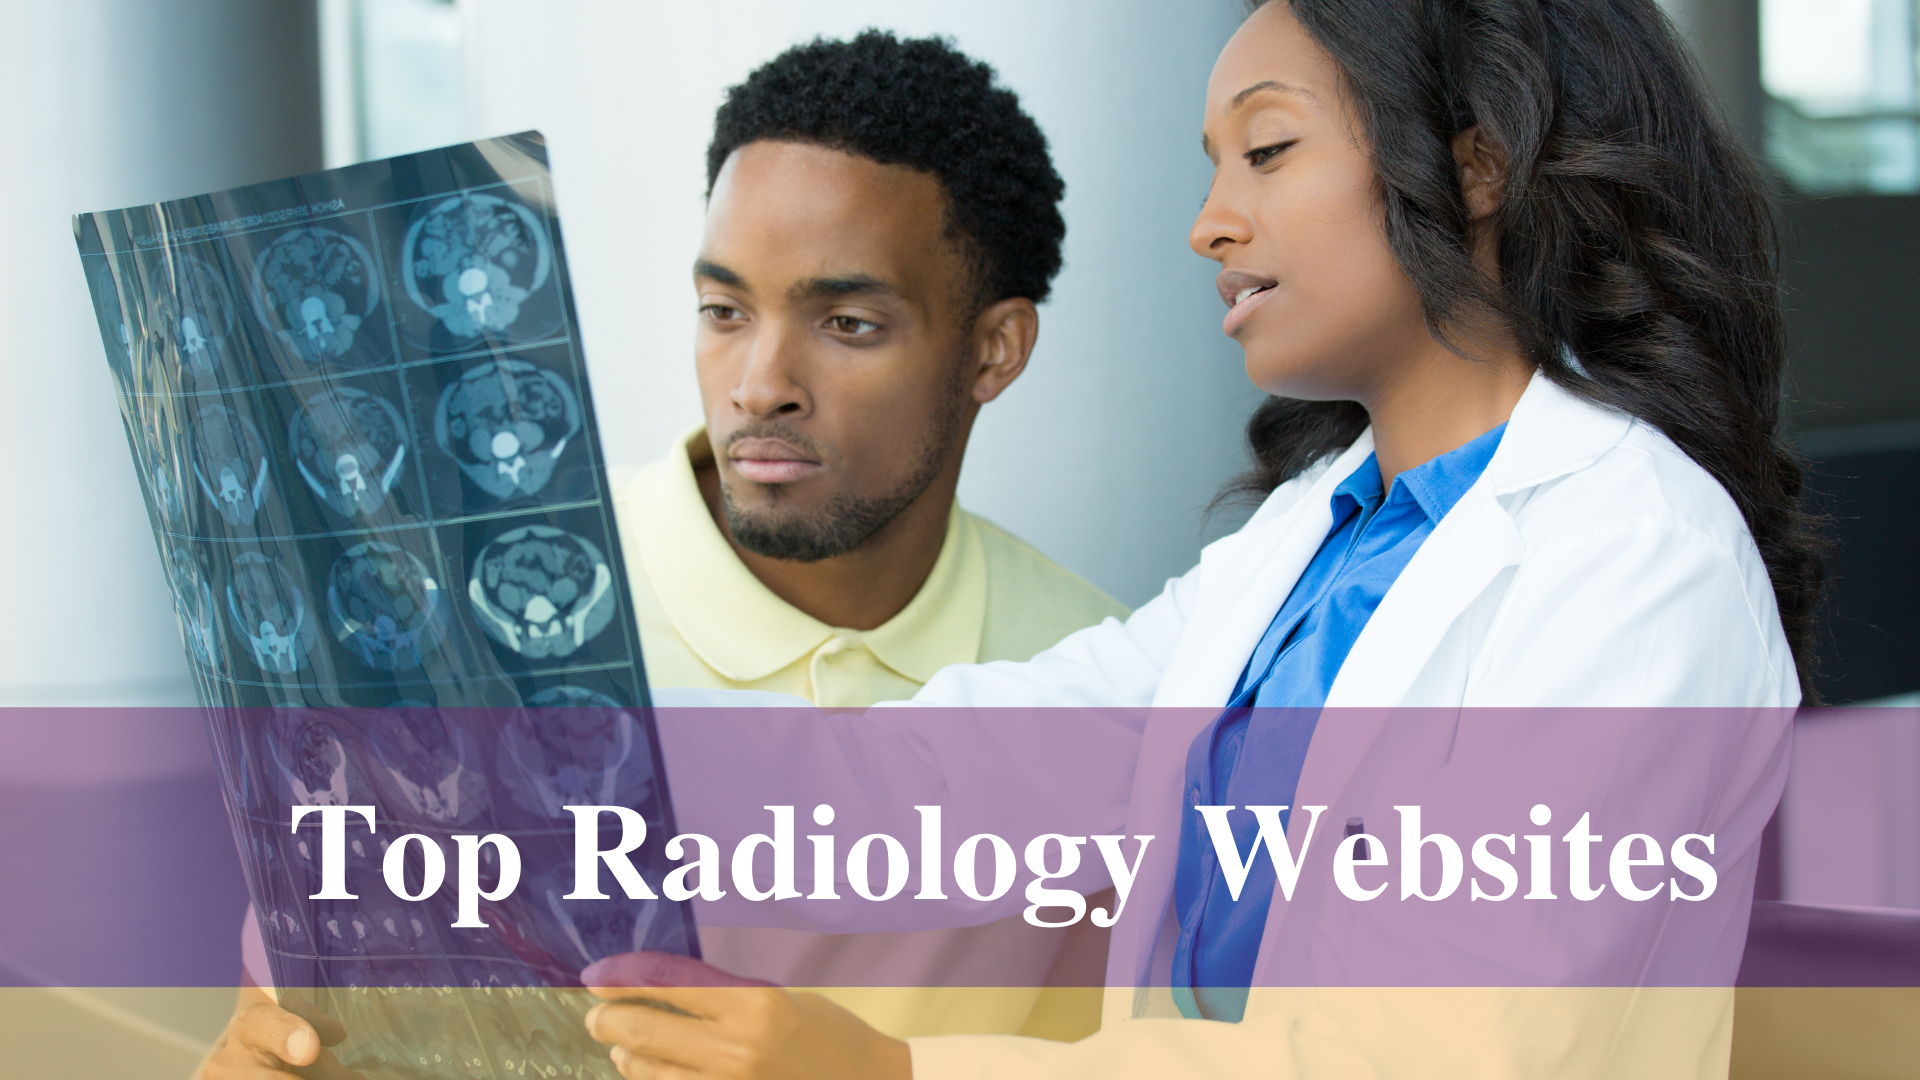 Top websites for radiology information